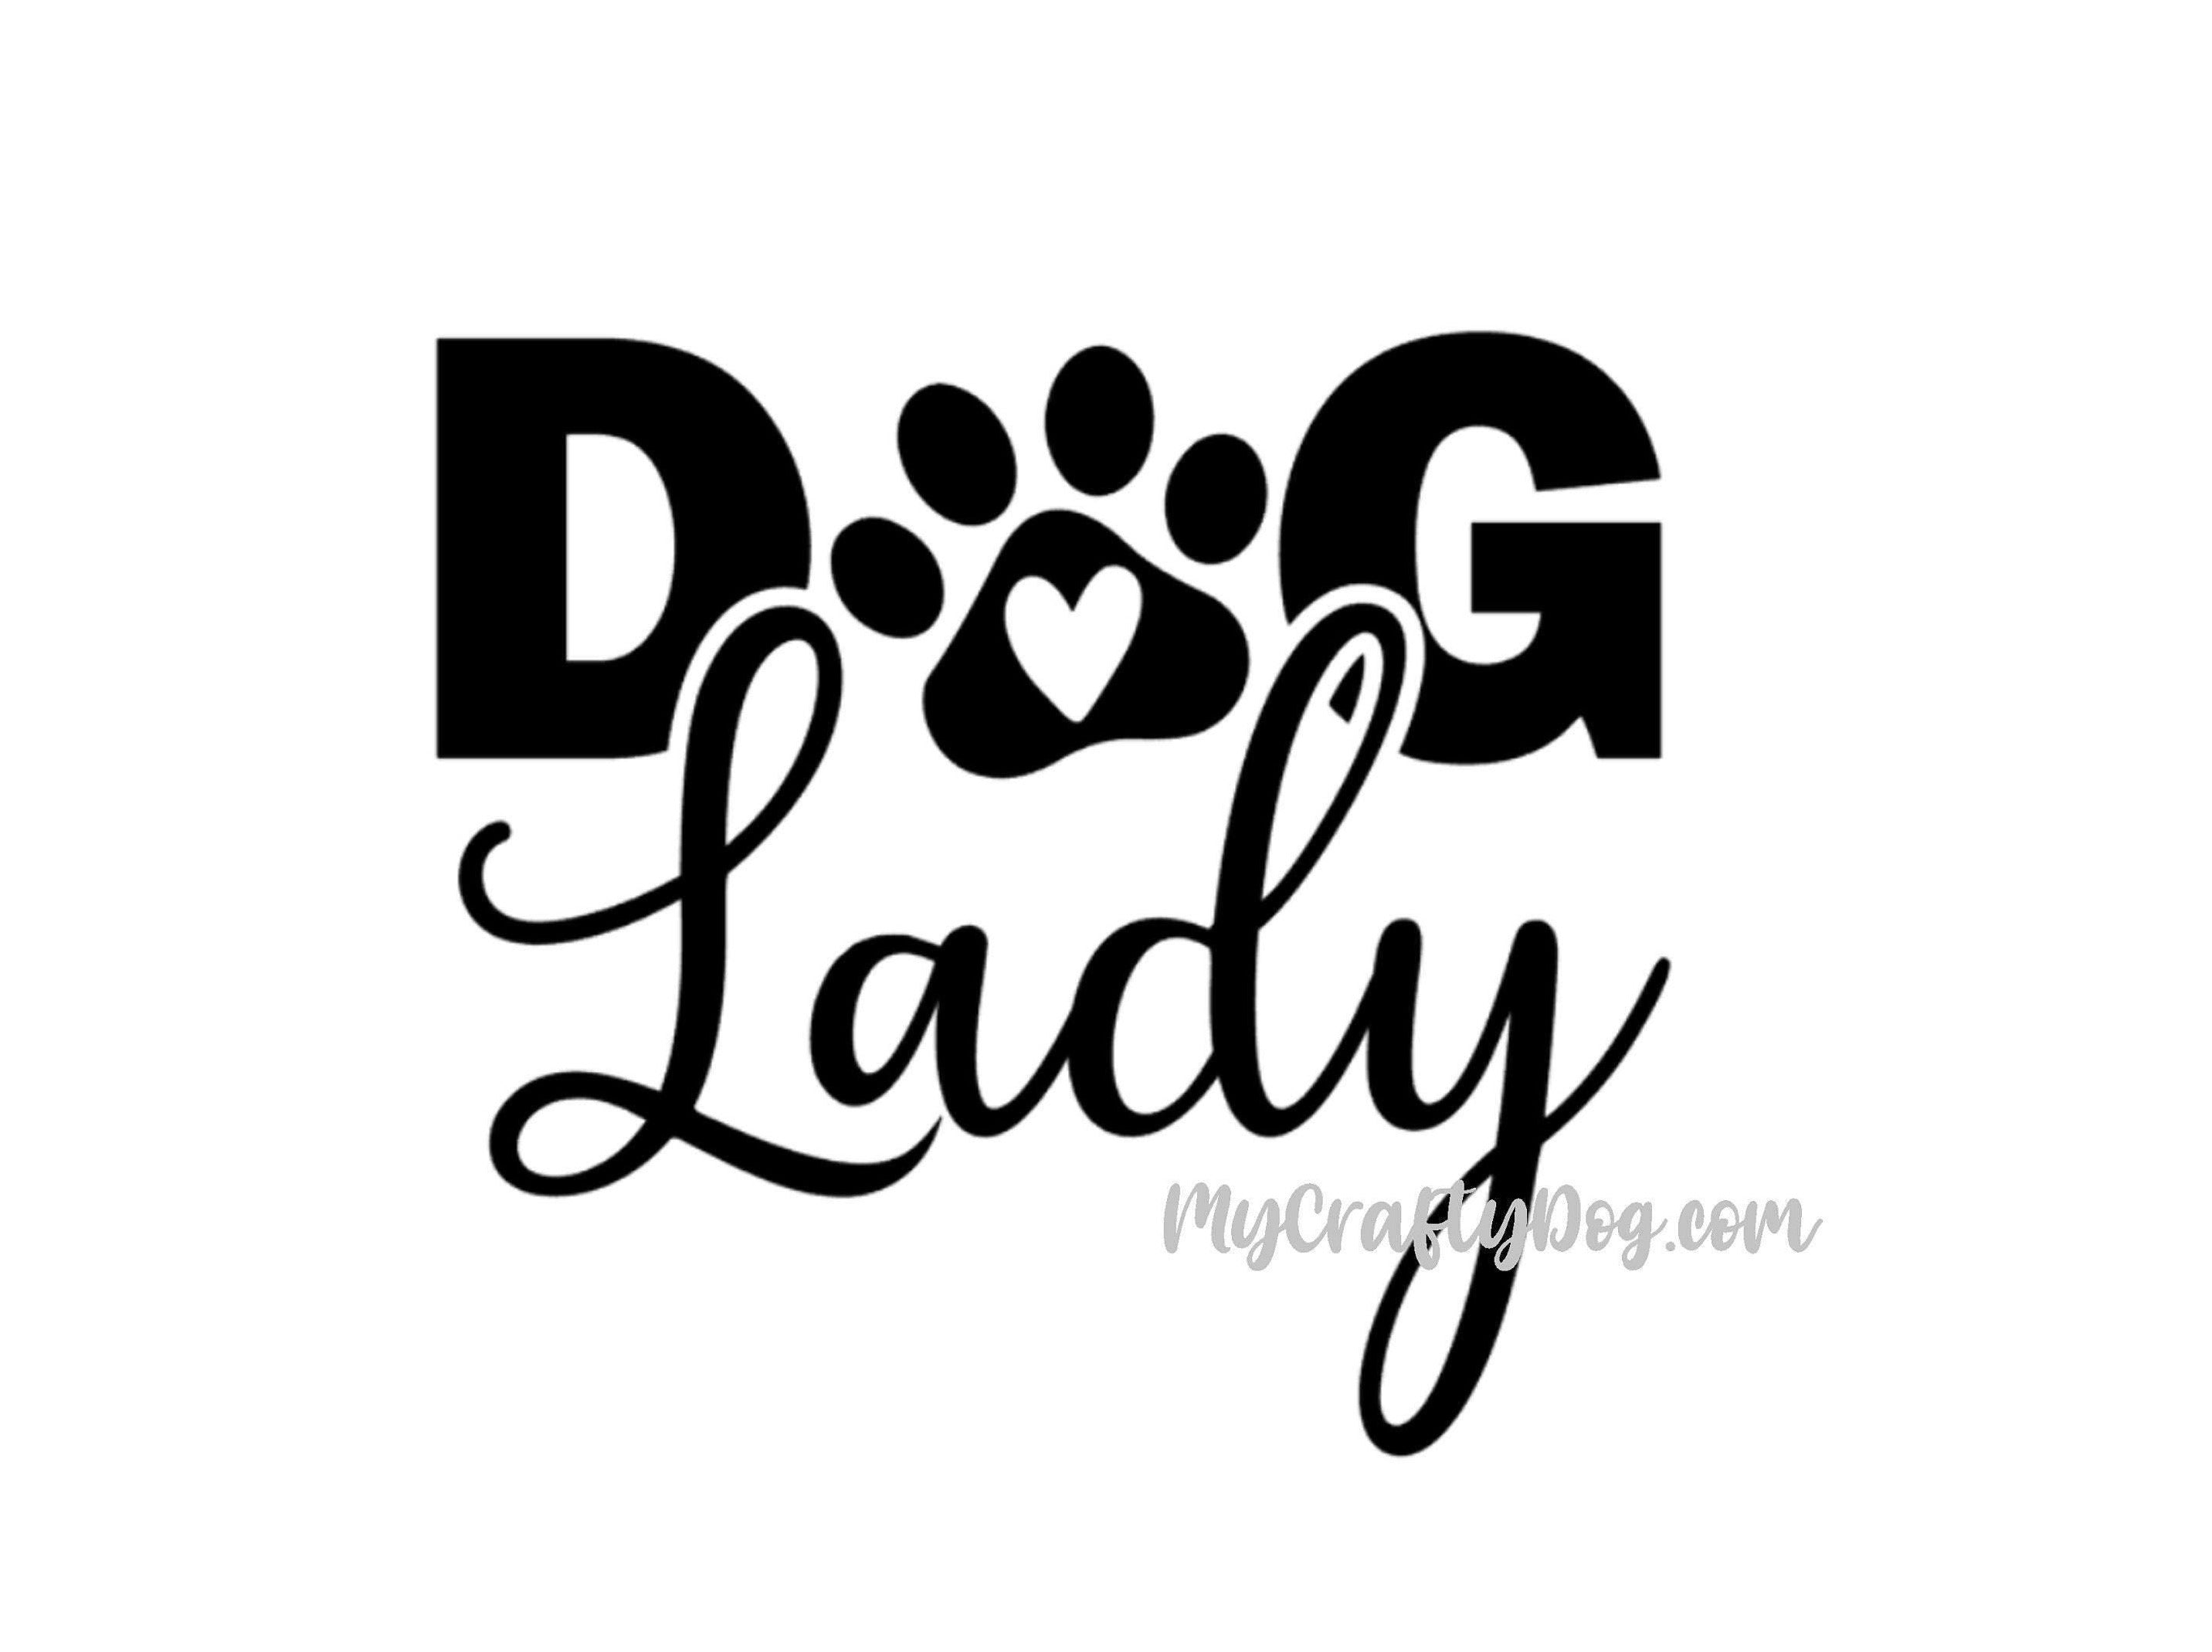 Dog Lady Car Decal / Sticker - My Crafty Dog